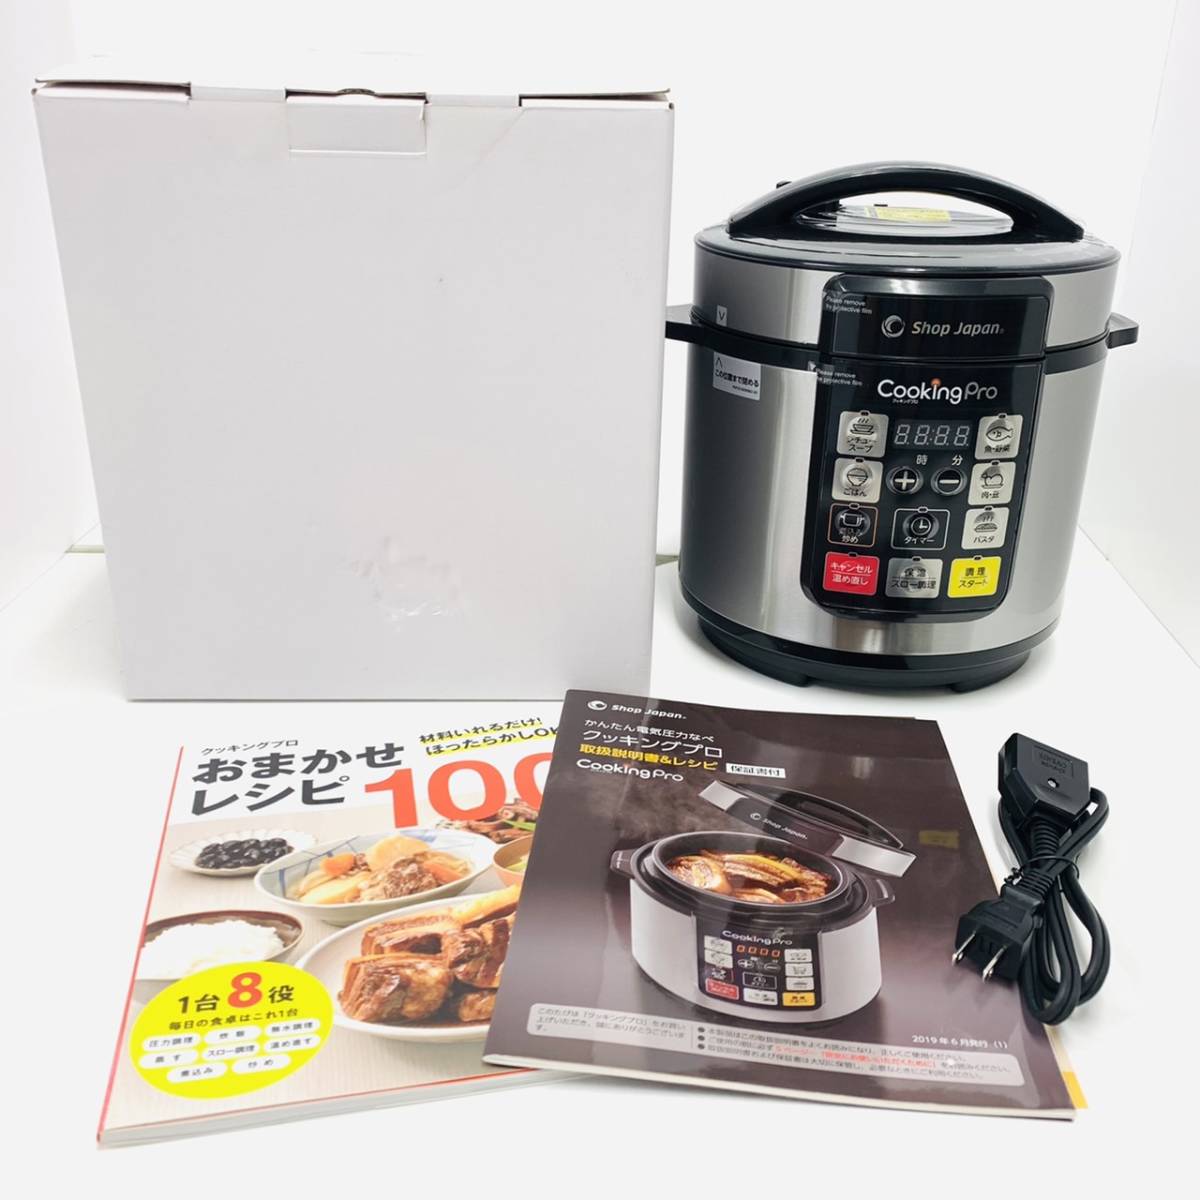 6502/ 【通電確認済み】shop japan Cooking pro クッキングプロ 電気